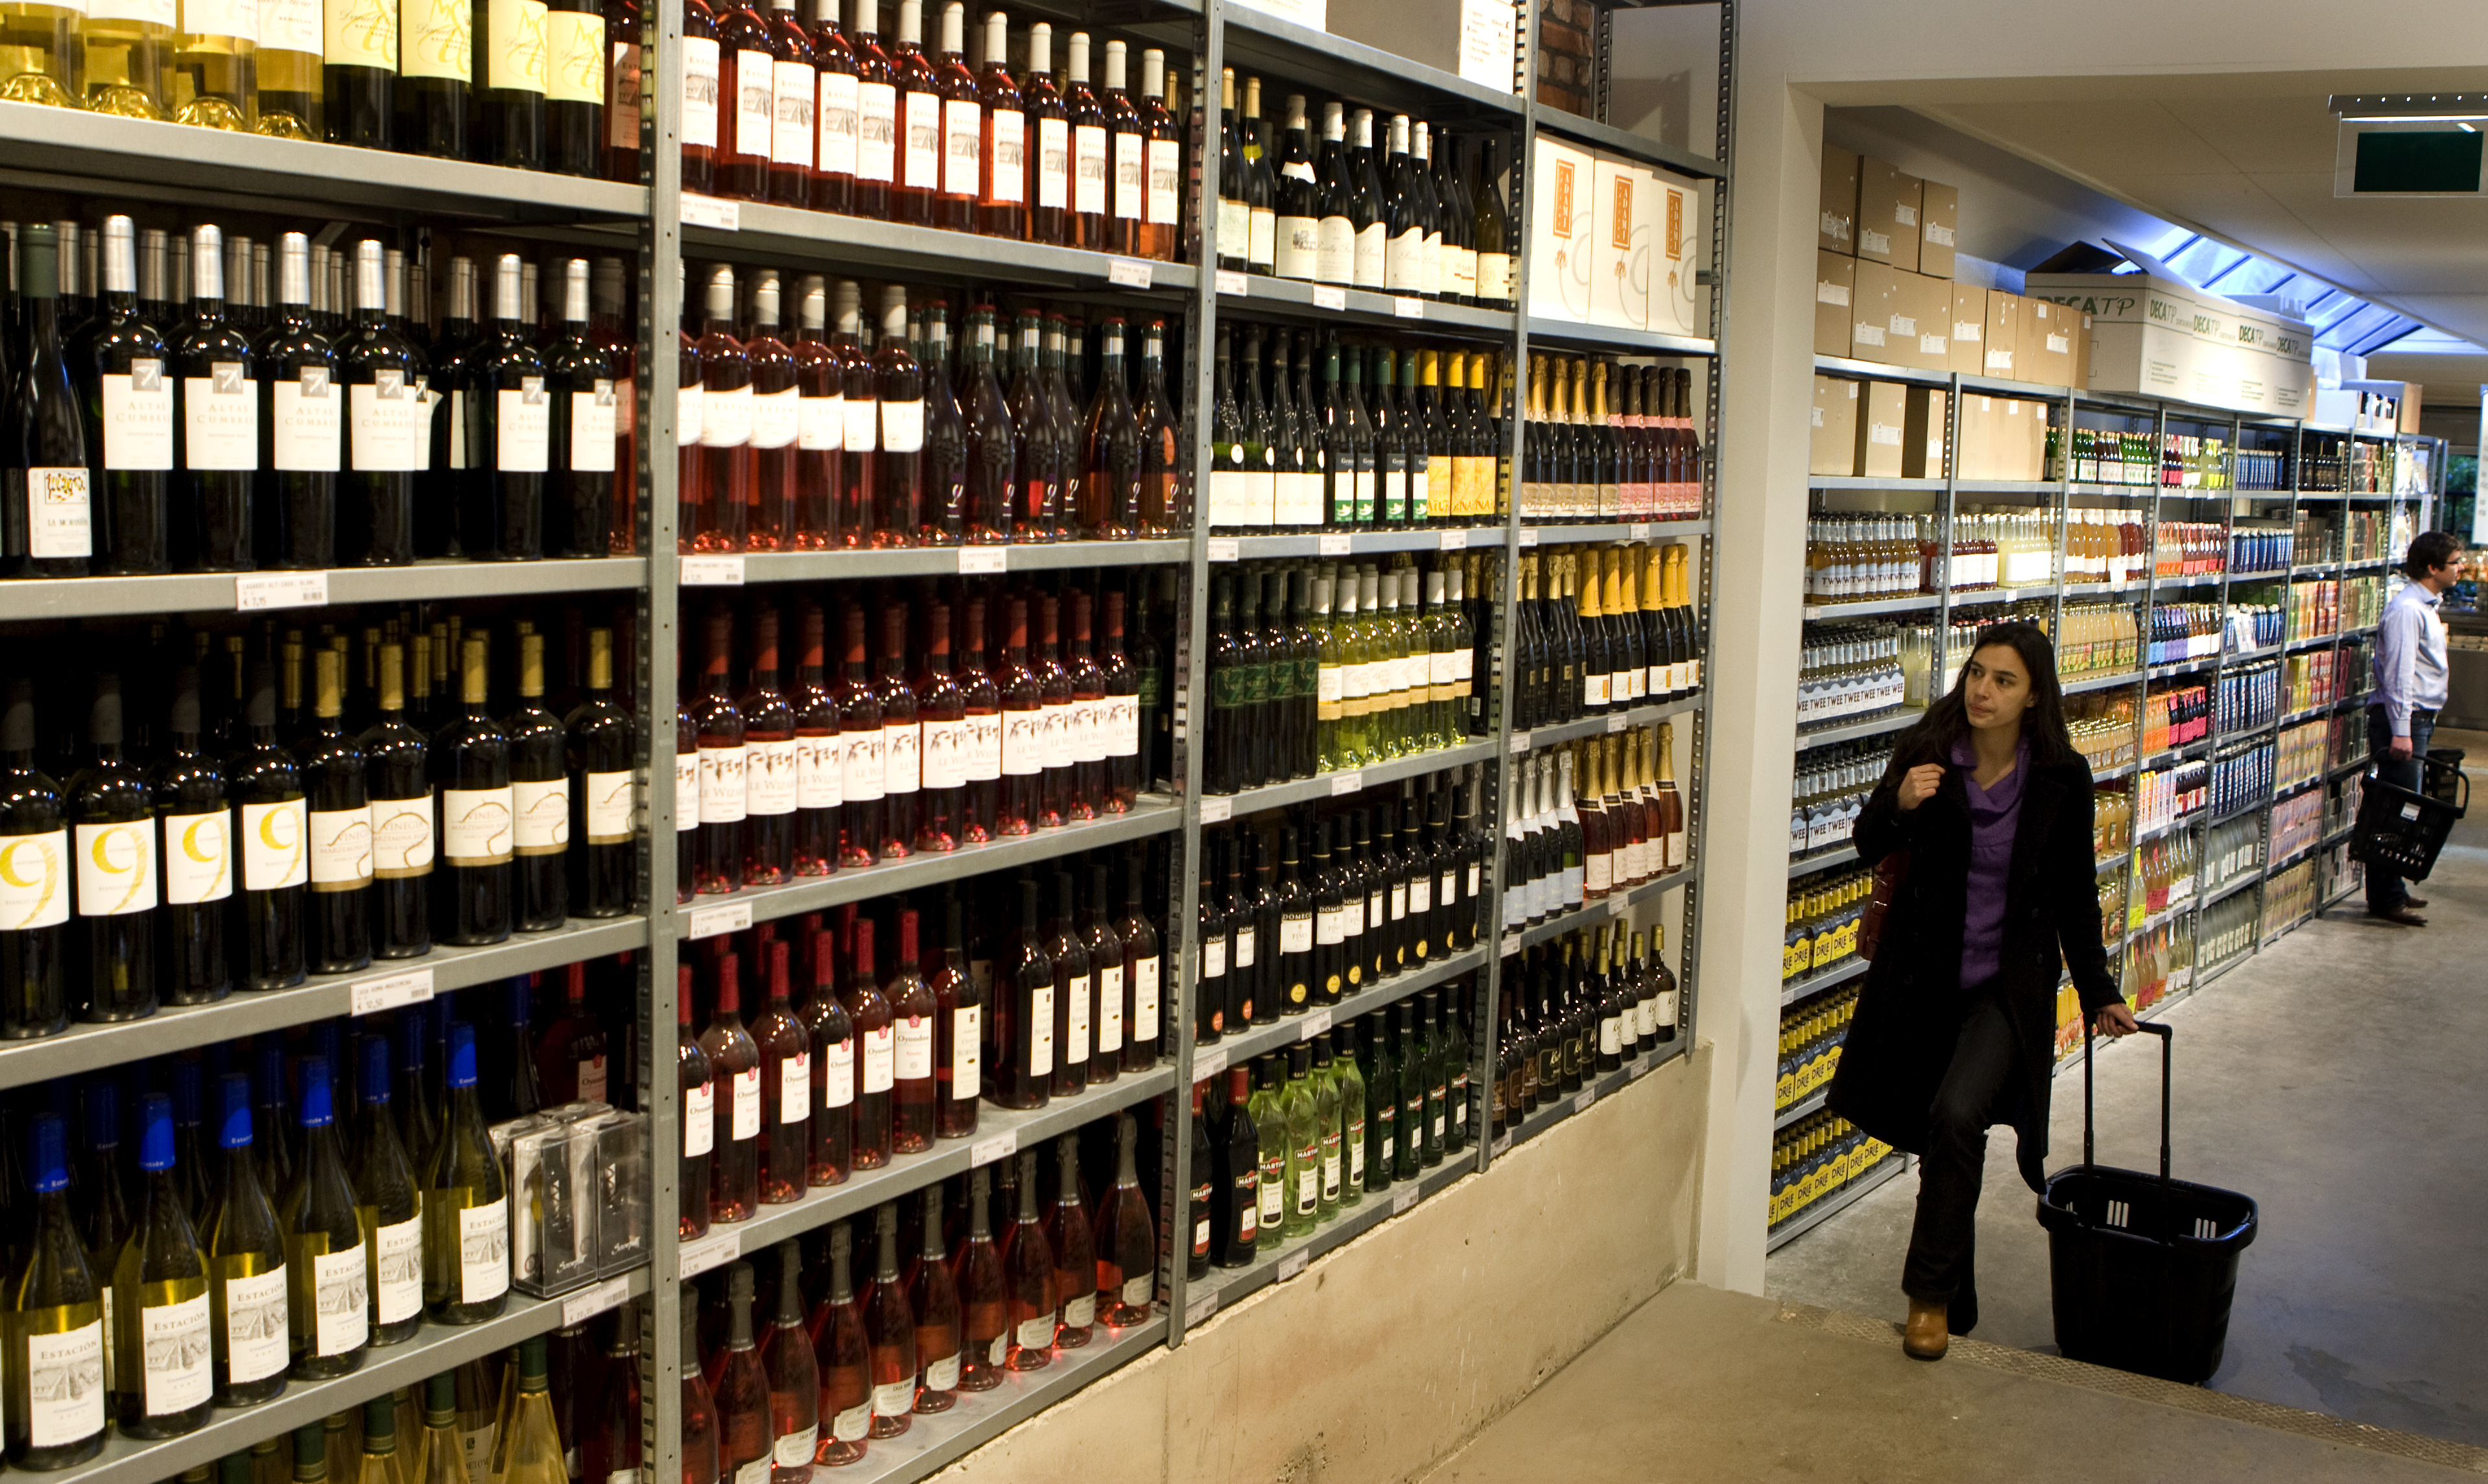 De verkoop van wijn is voor het eerst in 20 jaar drastisch afgenomen. In het eerste halfjaar is in Nederland ruim 8 procent minder wijn verkocht. Dit blijkt uit donderdag gepubliceerde cijfers van de Koninklijke Vereniging van Nederlandse Wijnhandelaren (KVNW). De branchevereniging wijt de teruggang volledig aan de accijnsverhoging van 18 procent per 1 januari. ,,De laatste accijnsverhoging was een brug te ver. We drinken minder wijn of kopen de wijn over de grens. Zo gaat de Nederlandse wijnhandel ten onder en loopt de schatkist inkomsten mis'', stelt voorzitter Peter van Houtert. Uit de cijfers blijkt dat er in de eerste 6 maanden van het jaar ongeveer 16 miljoen liter minder wijn is verkocht. Afgelopen jaren was de verkoop van wijn in Nederland stabiel, al kende de import ook na de accijnsverhoging van 2010 een lichte dip.